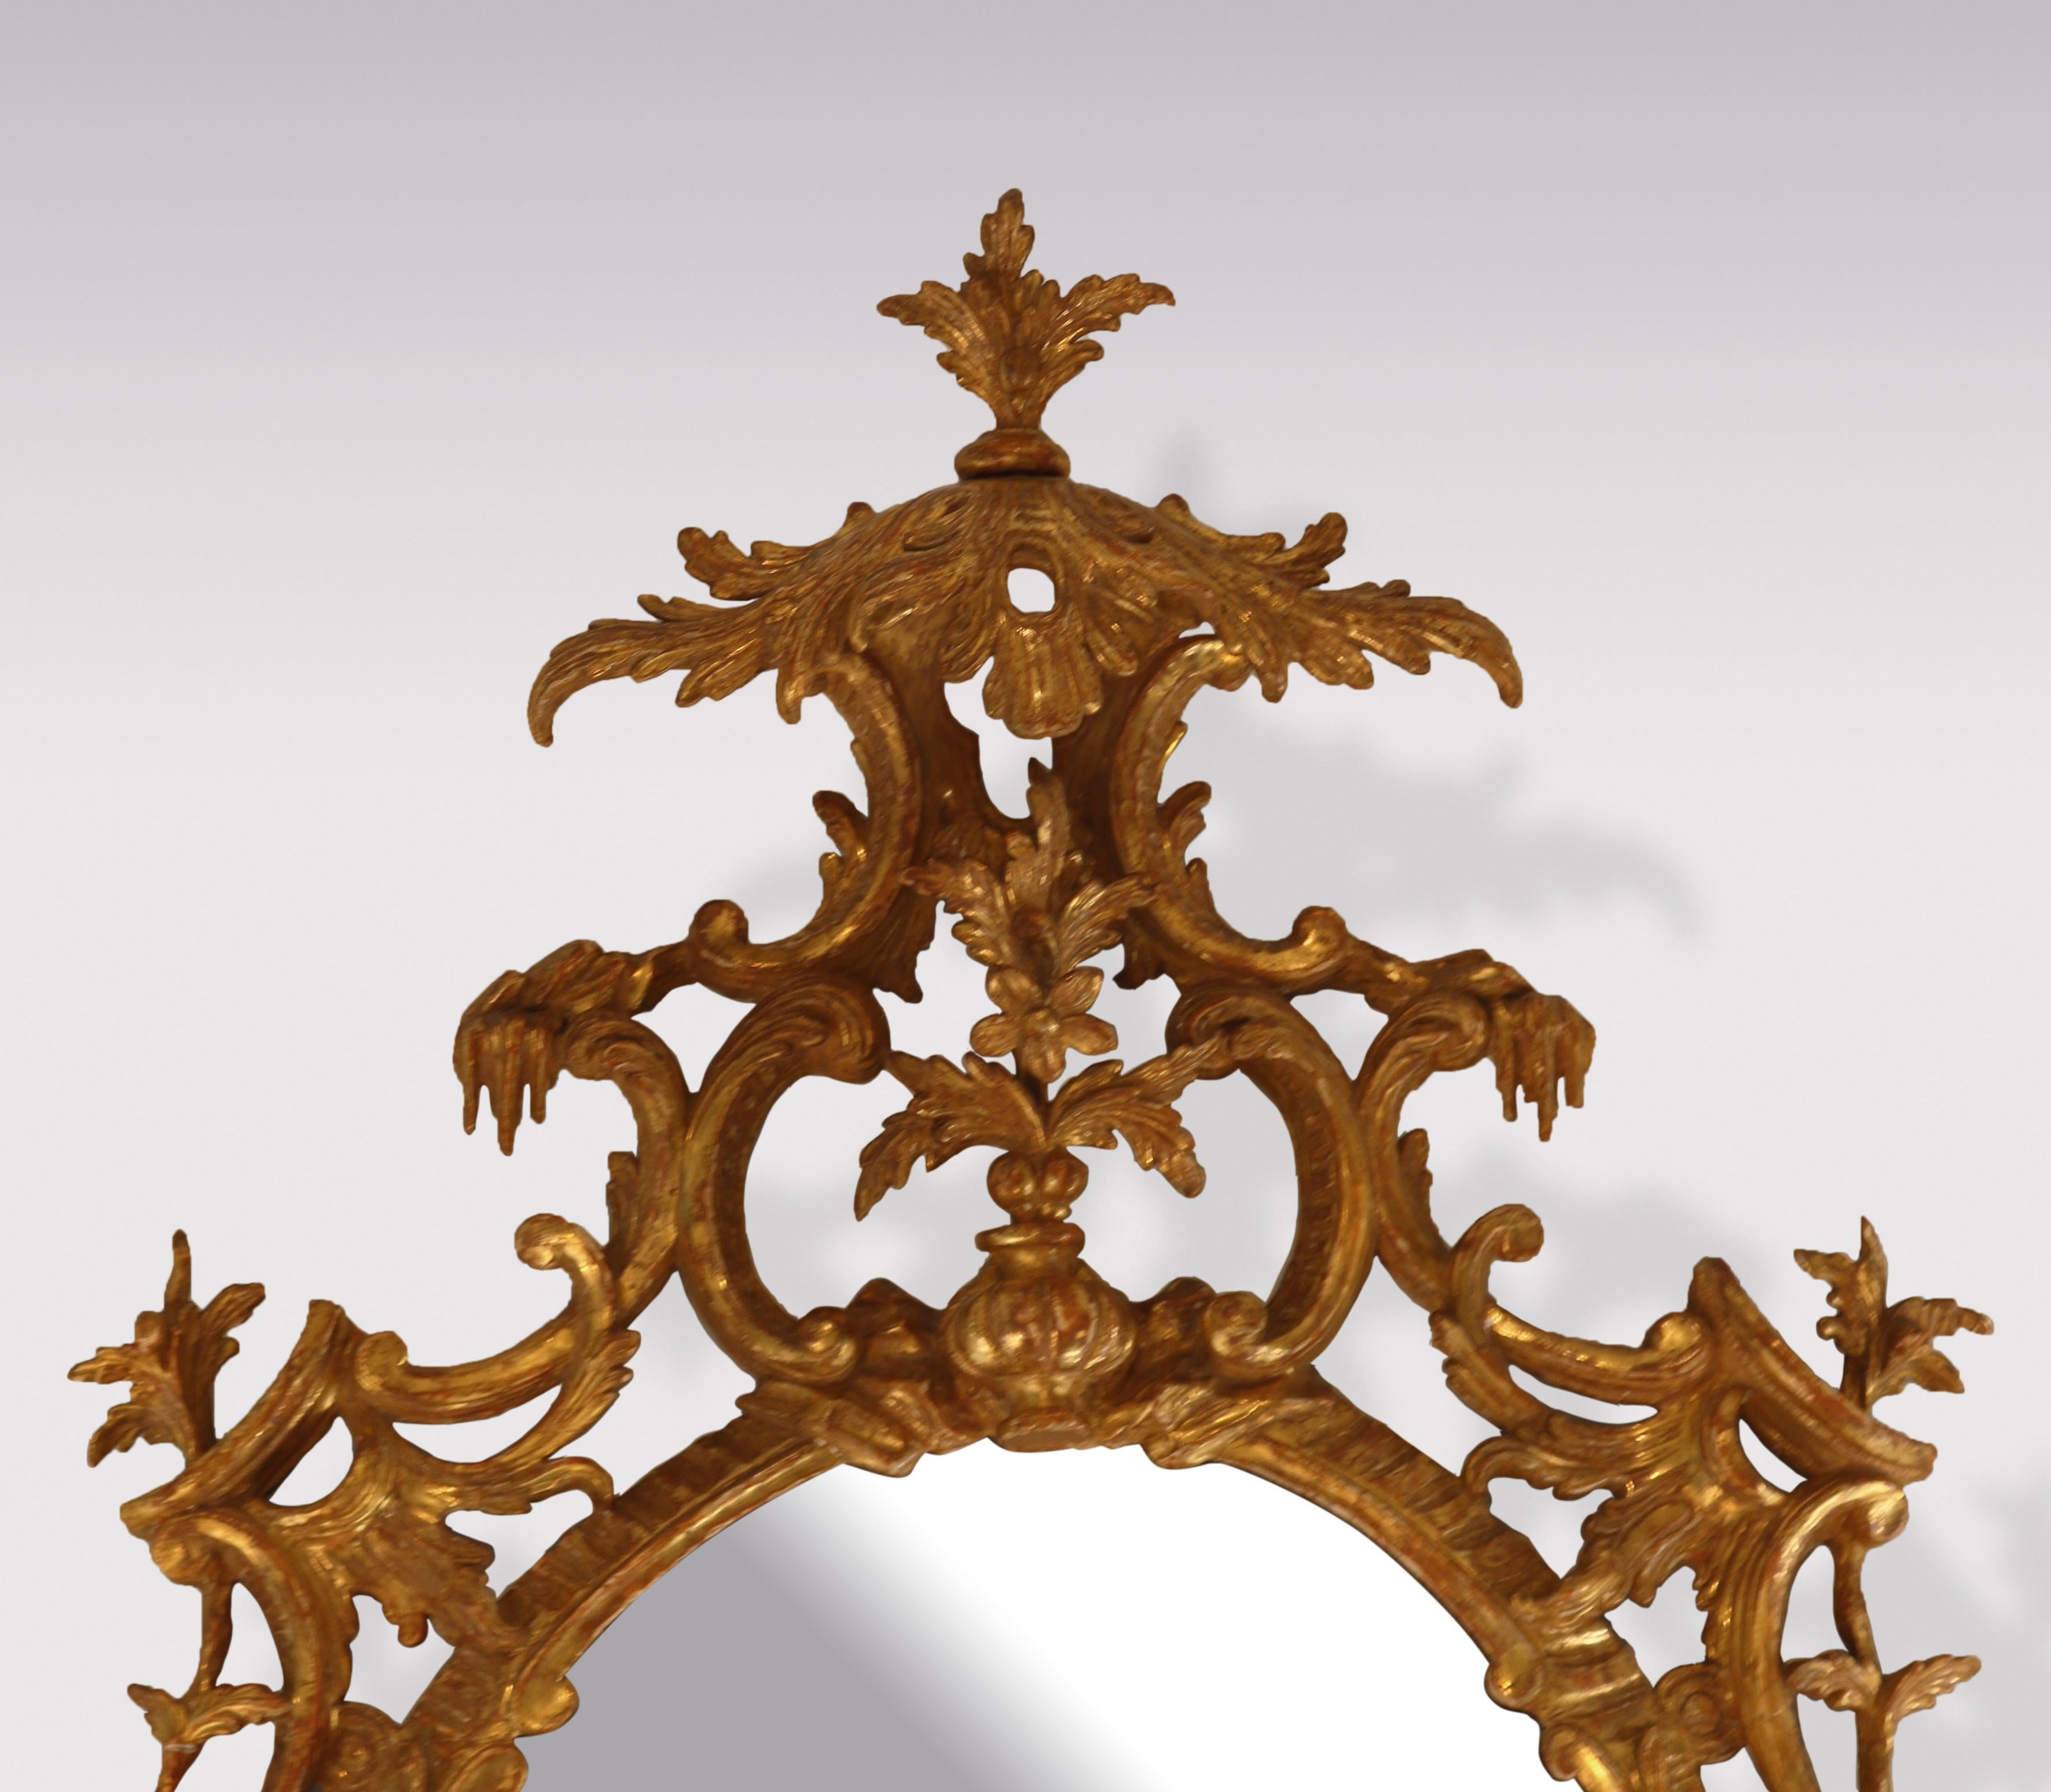 Miroir ovale en bois doré sculpté de la période Chippendale, de belle qualité, datant du milieu du XVIIIe siècle, avec un cartouche à baldaquin en forme de feuille au-dessus d'un vase avec des fleurs. Le miroir est orné d'une fleur et d'une acanthe